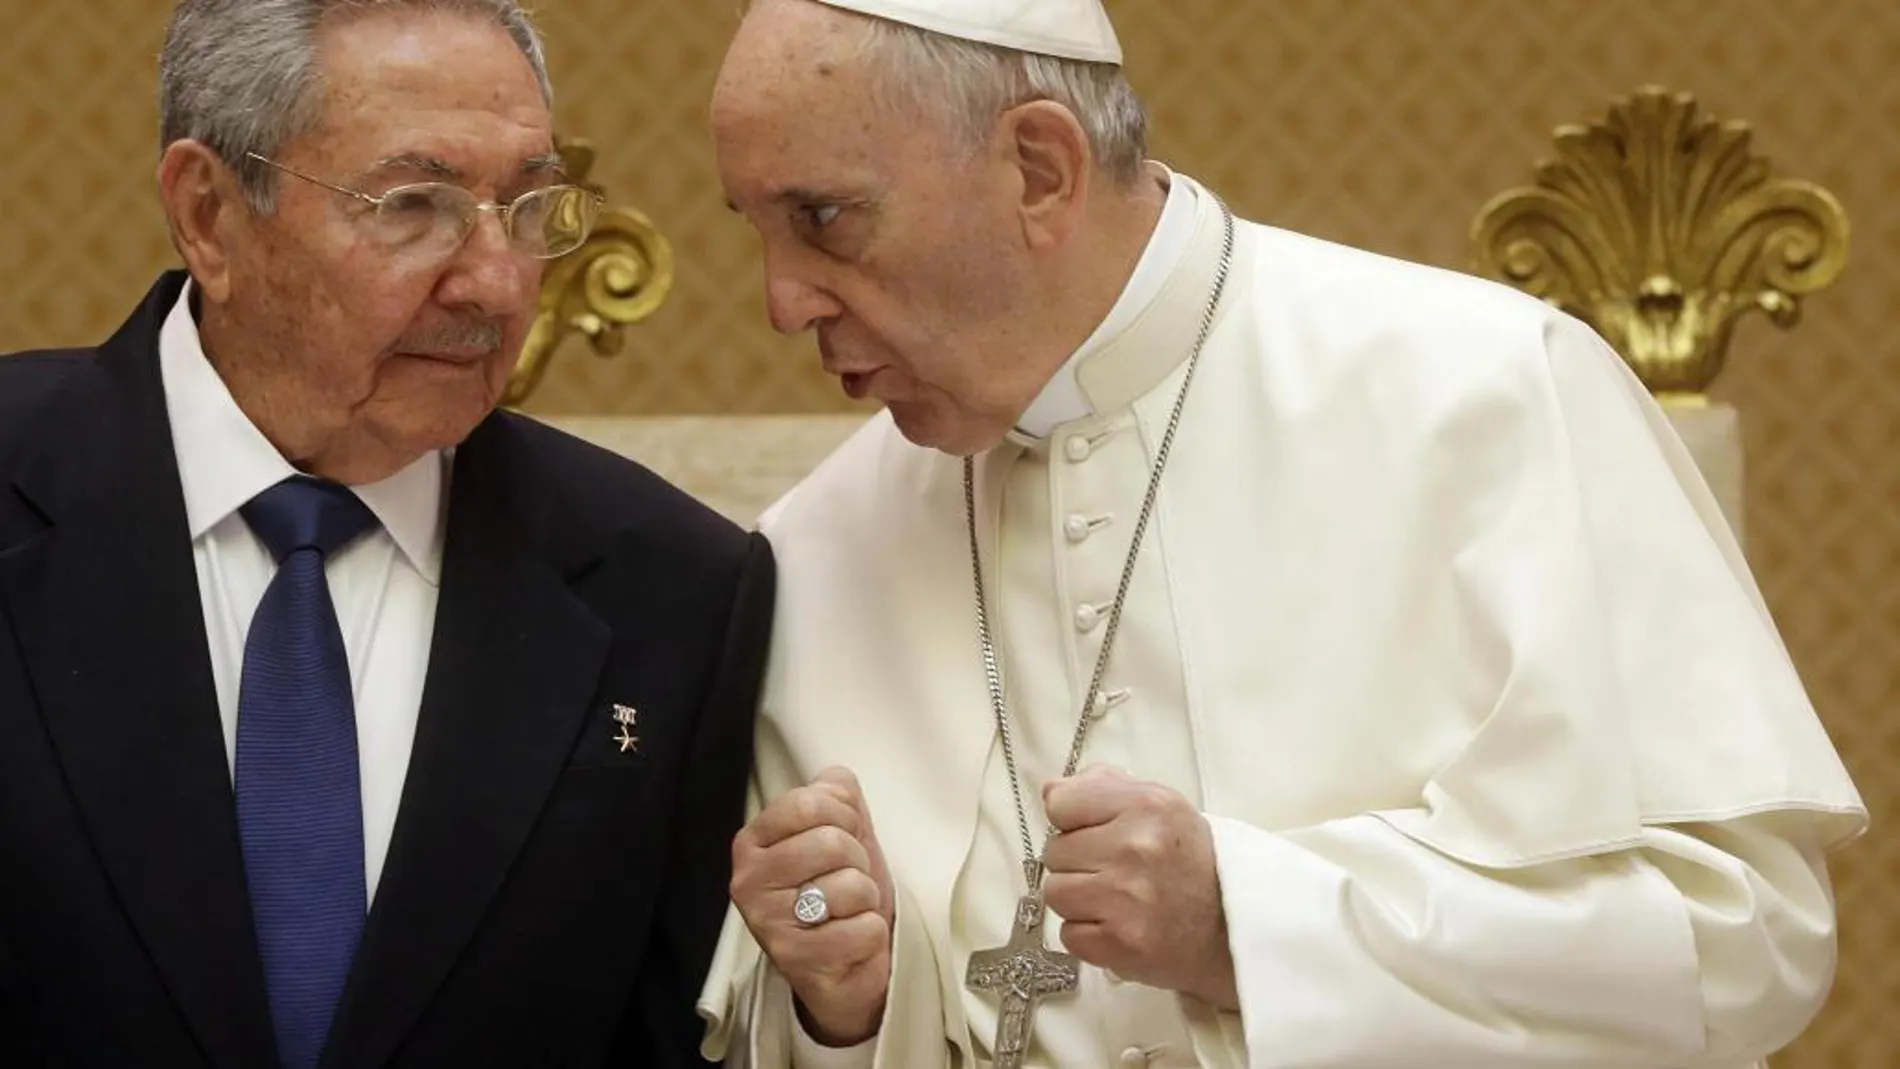 El Papa Francisco conversa con el presidente de Cuba, Raúl Castro durante la audiencia privada